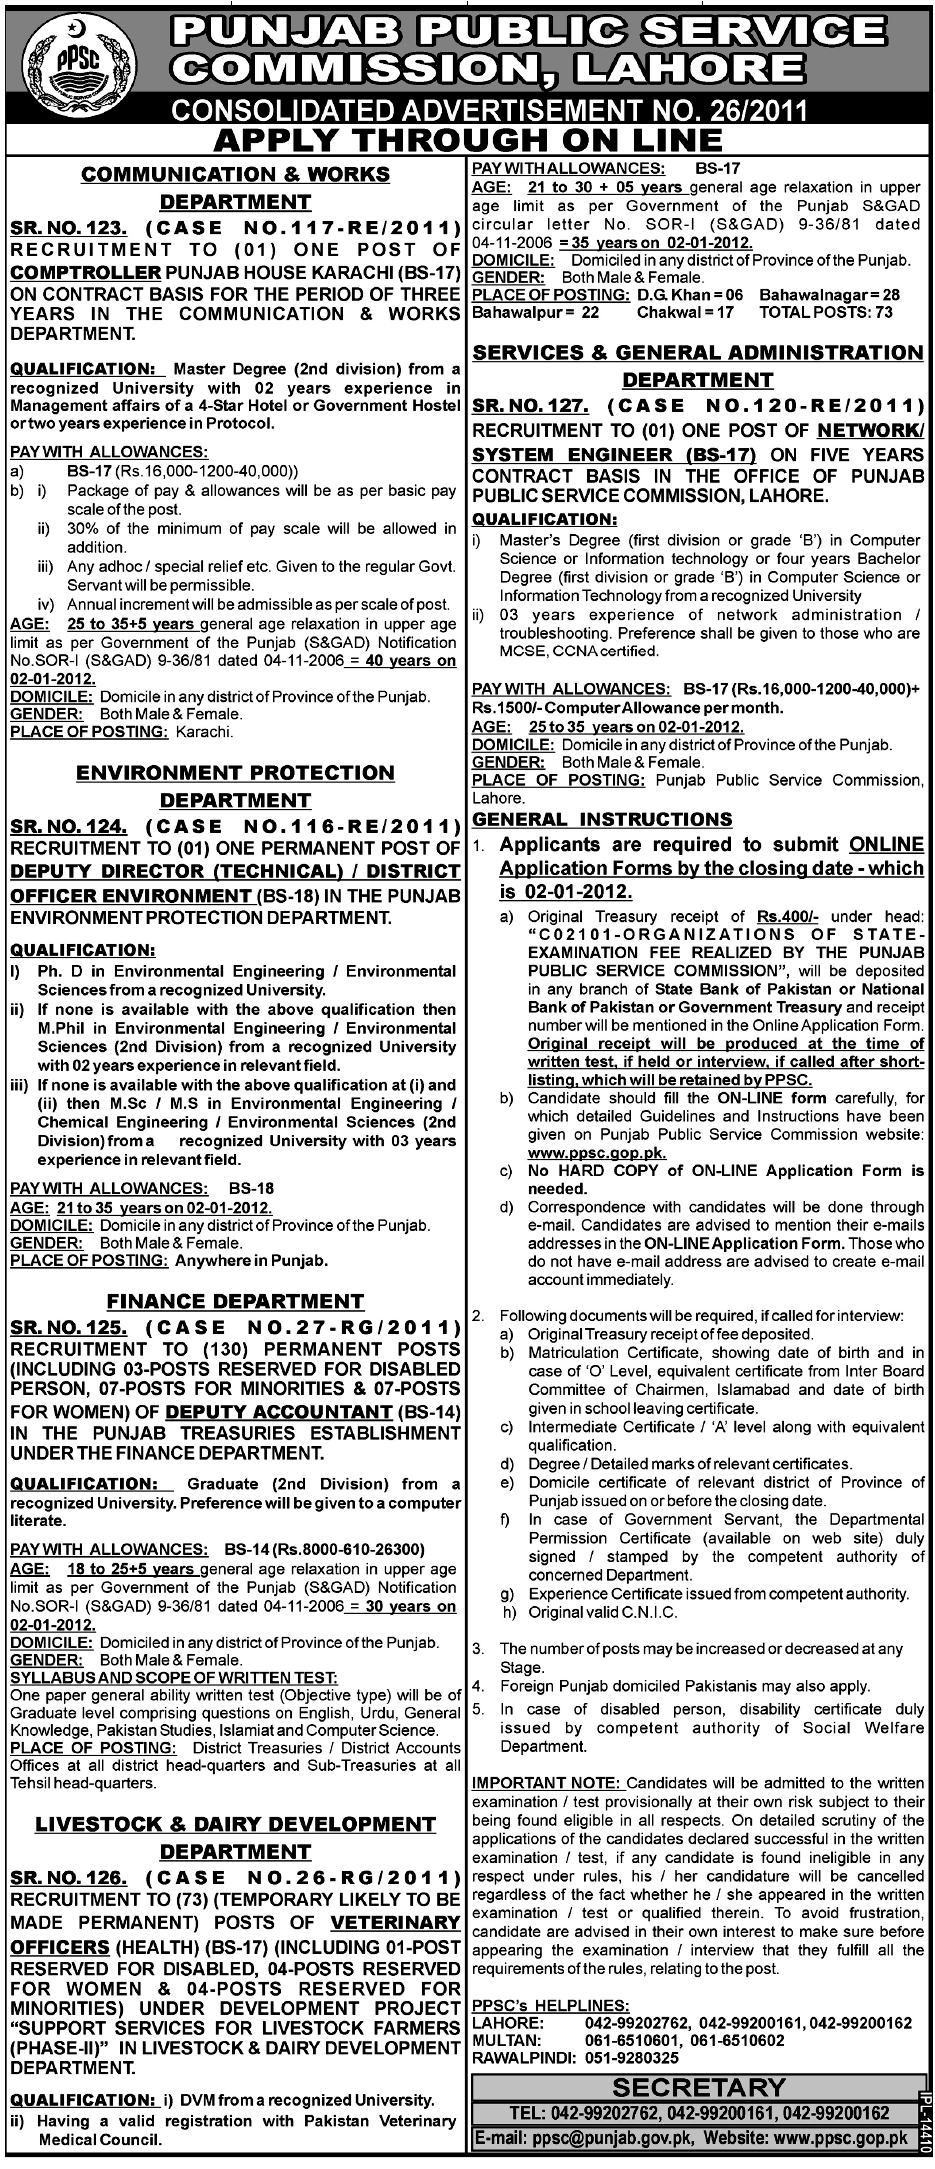 Punjab Public Service Commission, Lahore Job Opportunities